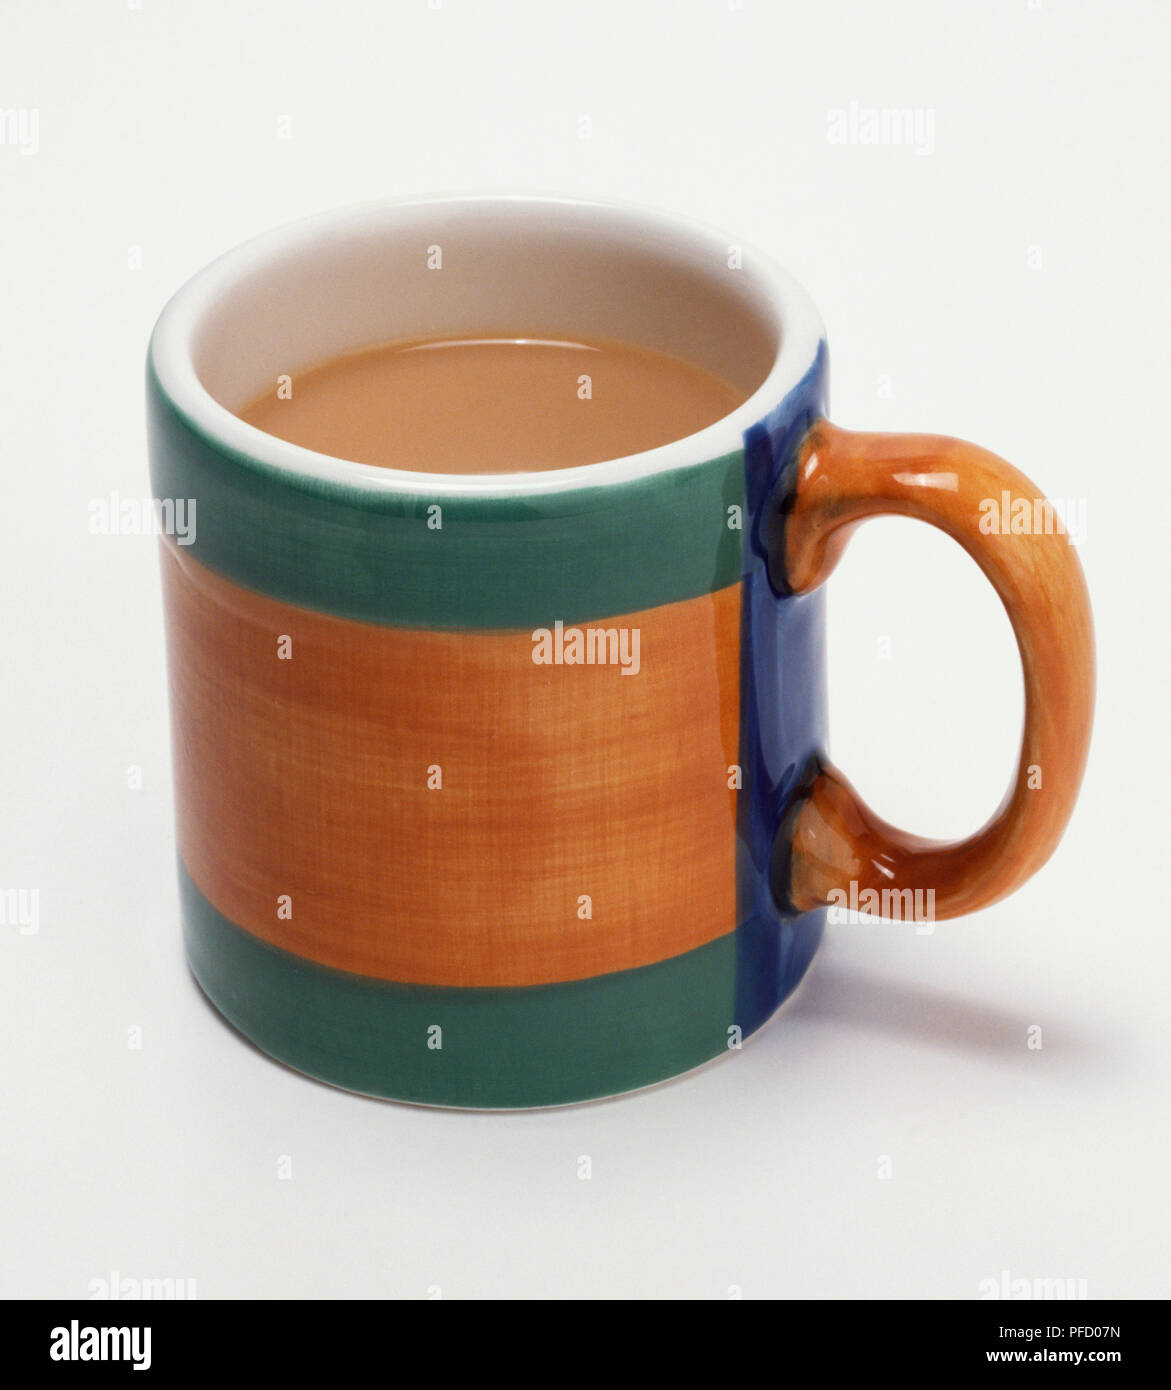 Mug of tea, close up. Stock Photo